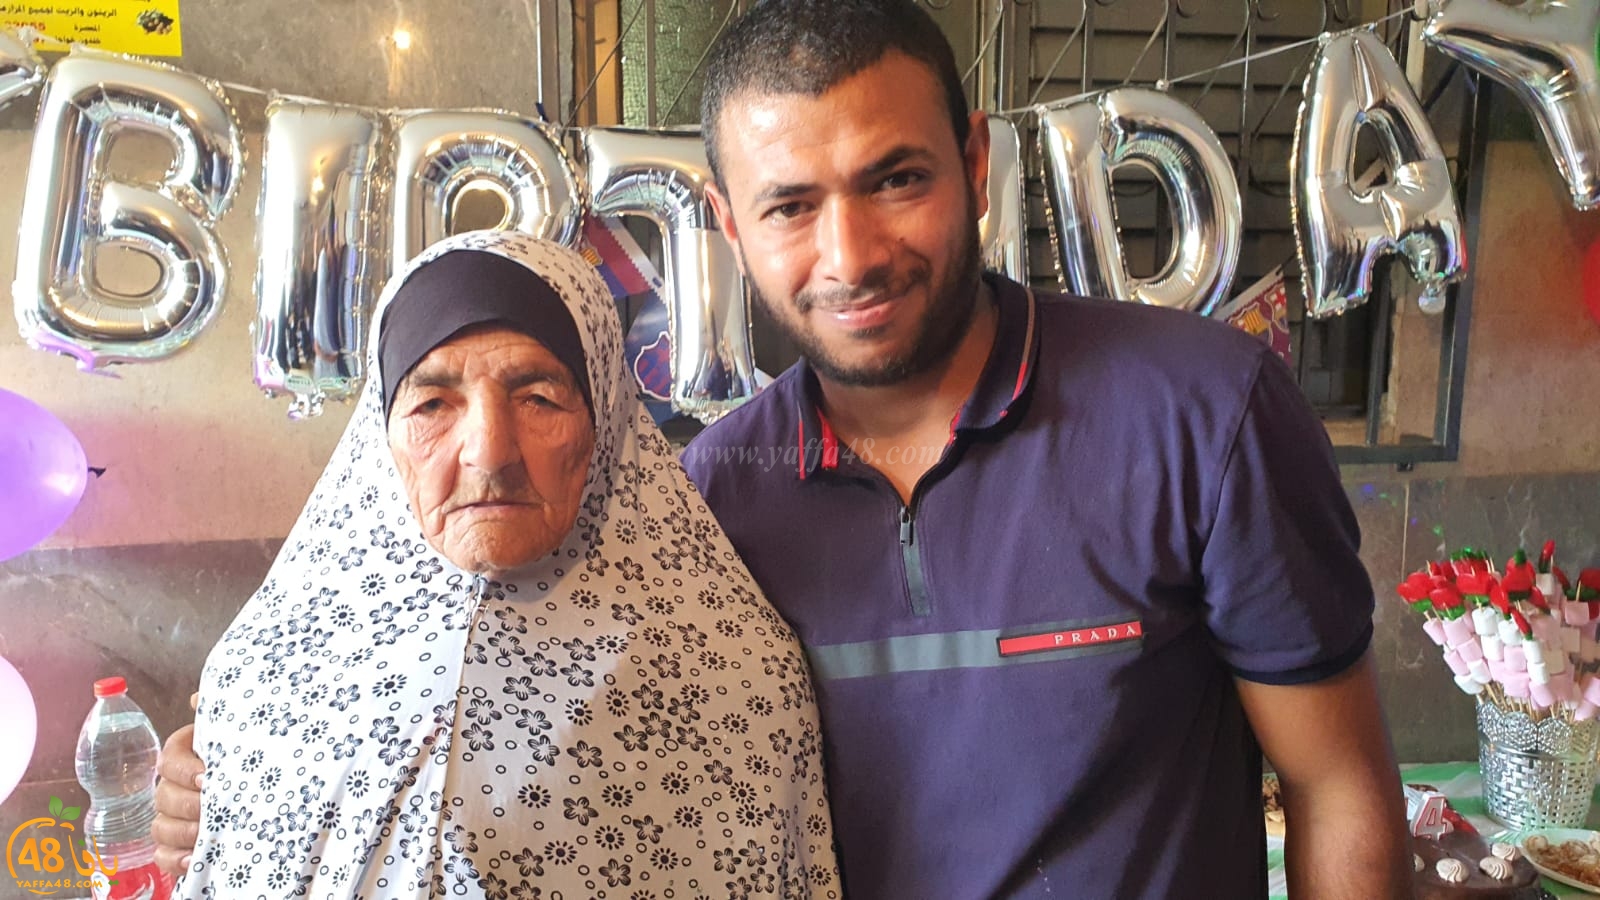  اجتماعيات - الحاجة فاطمة أبو صيام أبو كاشف من اللد تحتفل بعيد ميلادها الـ100